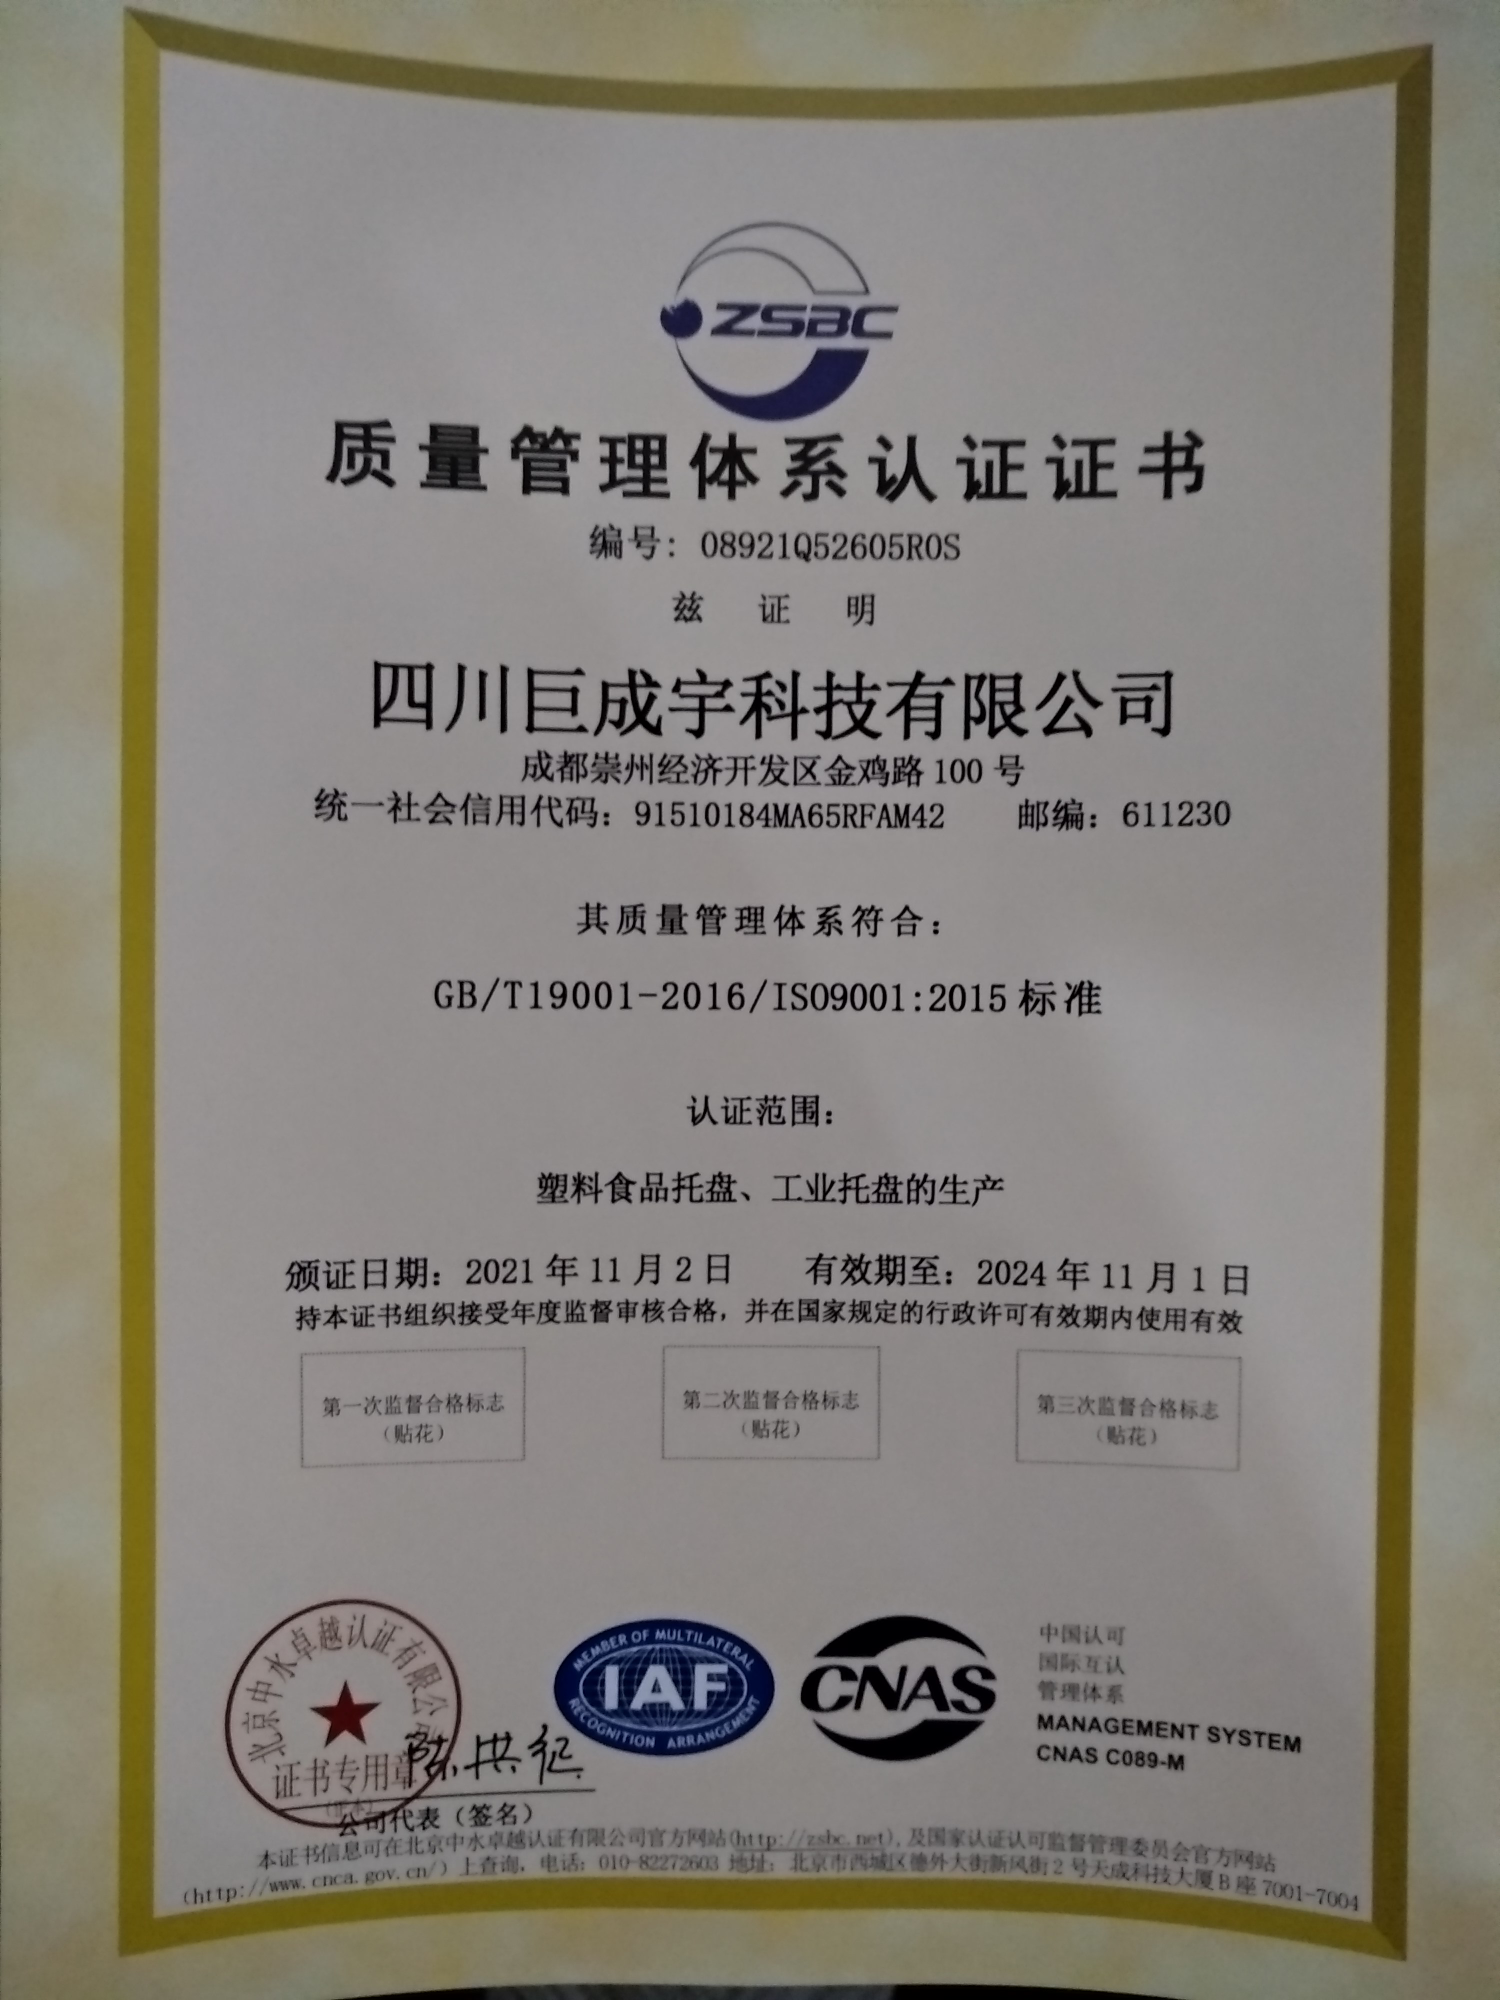 恭喜四川巨成宇科技有限公司顺利通过审核取得ISO9001质量管理体系认证证书